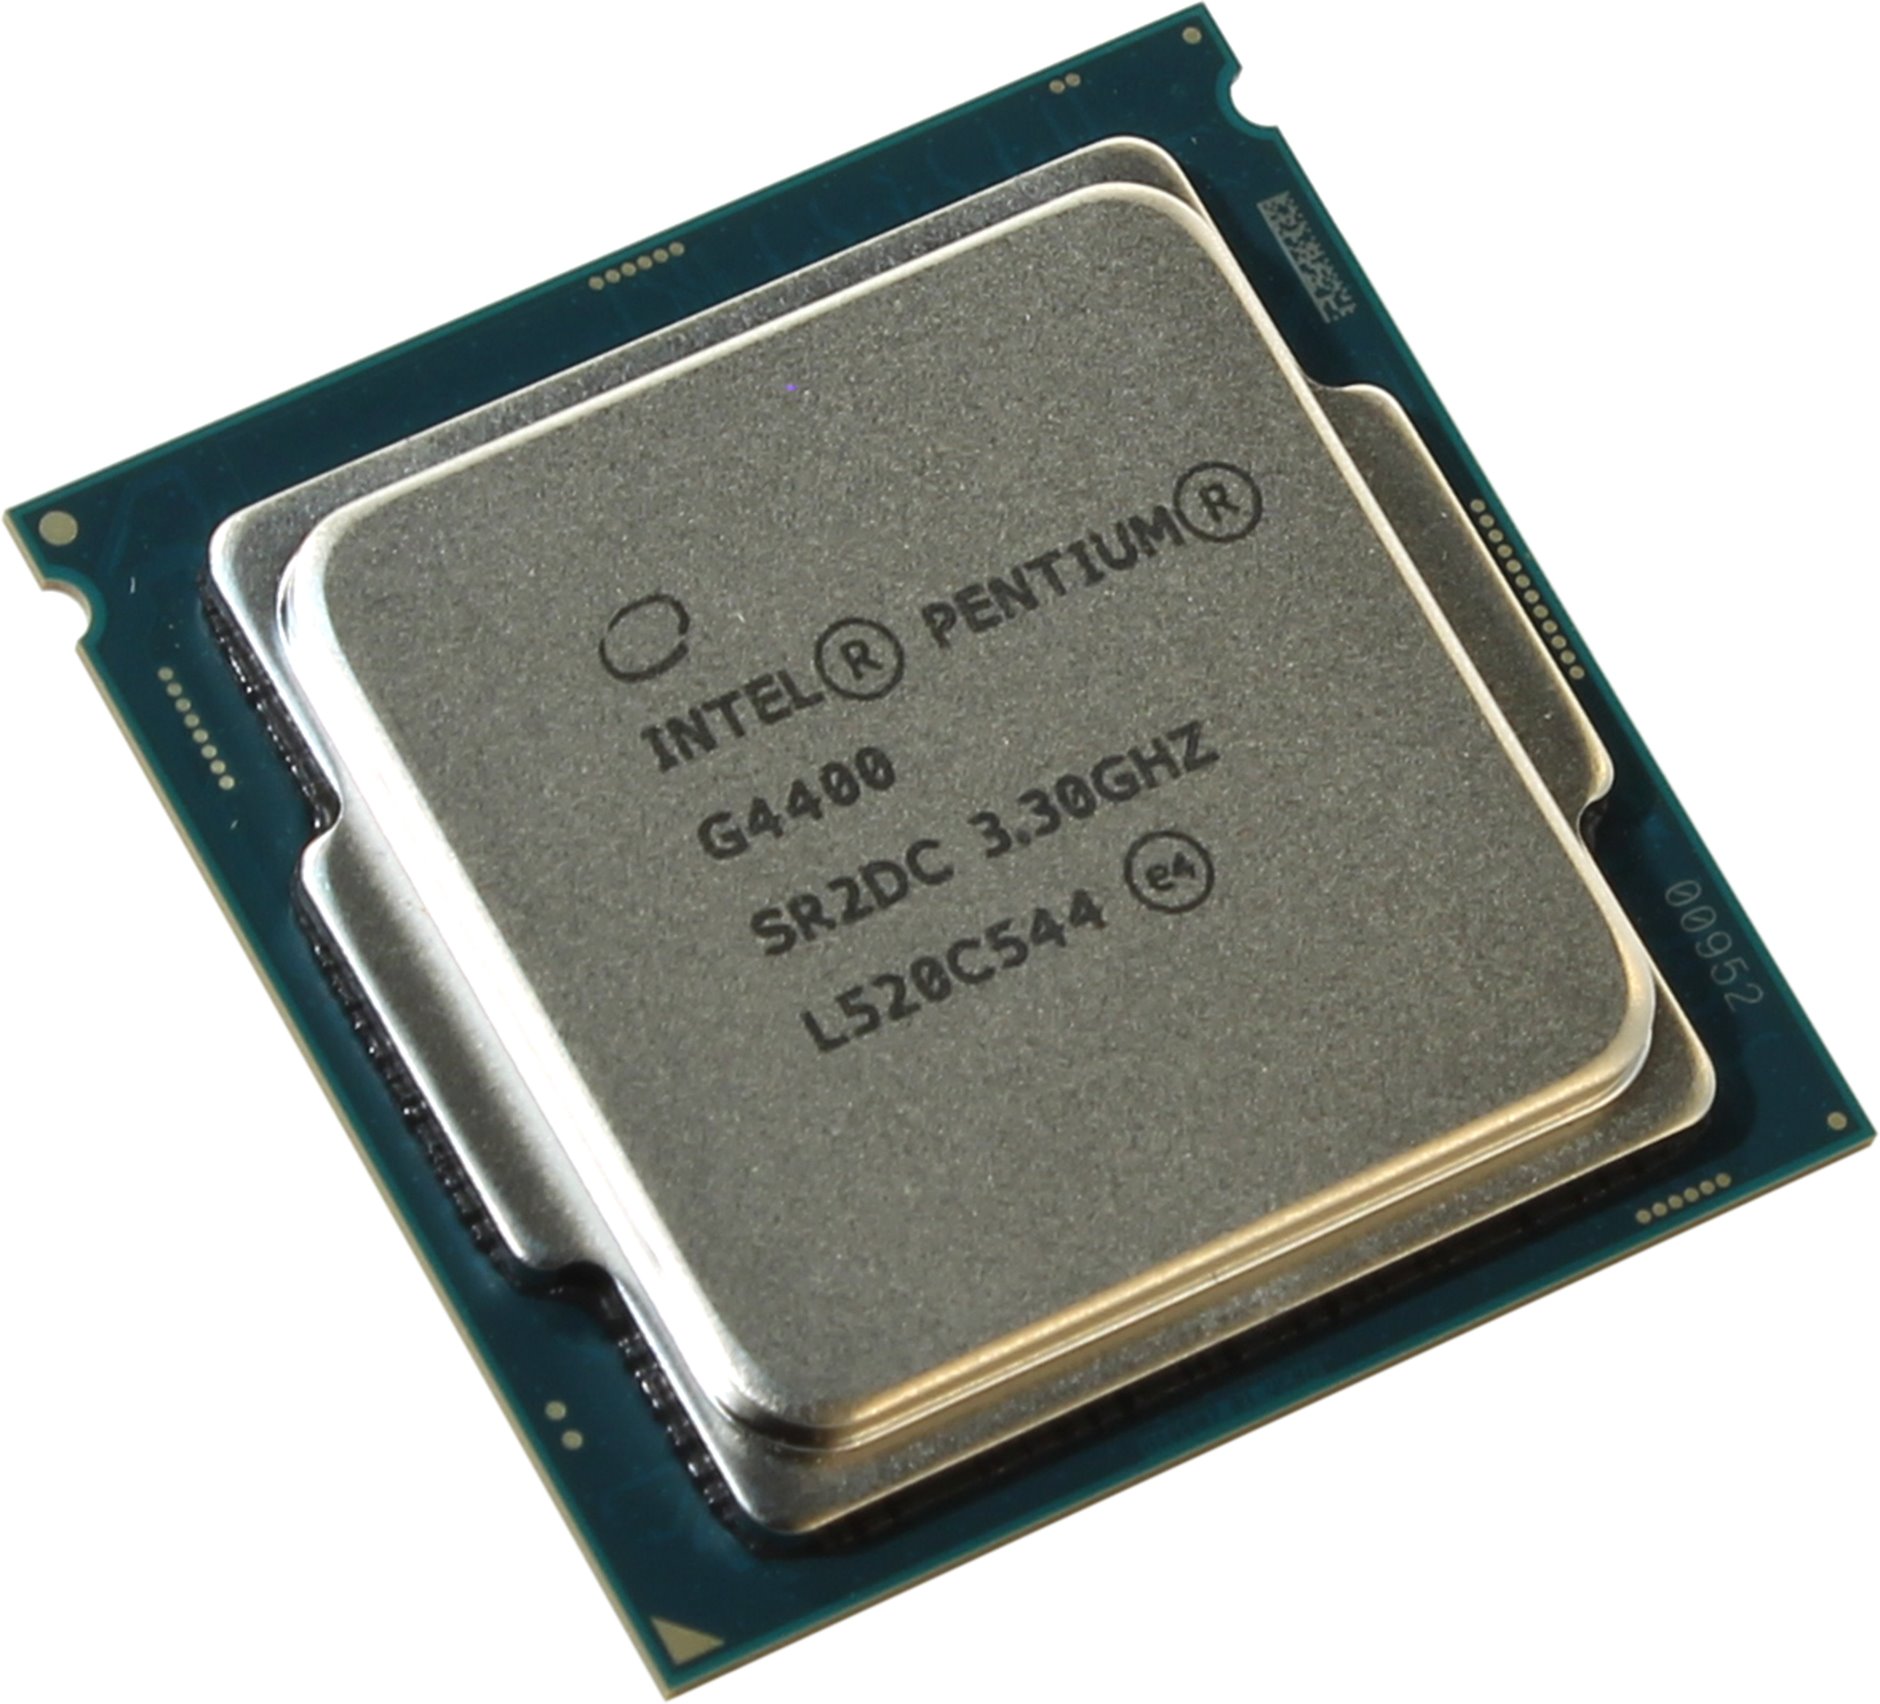 Káº¿t quáº£ hÃ¬nh áº£nh cho Intel Pentium G4400